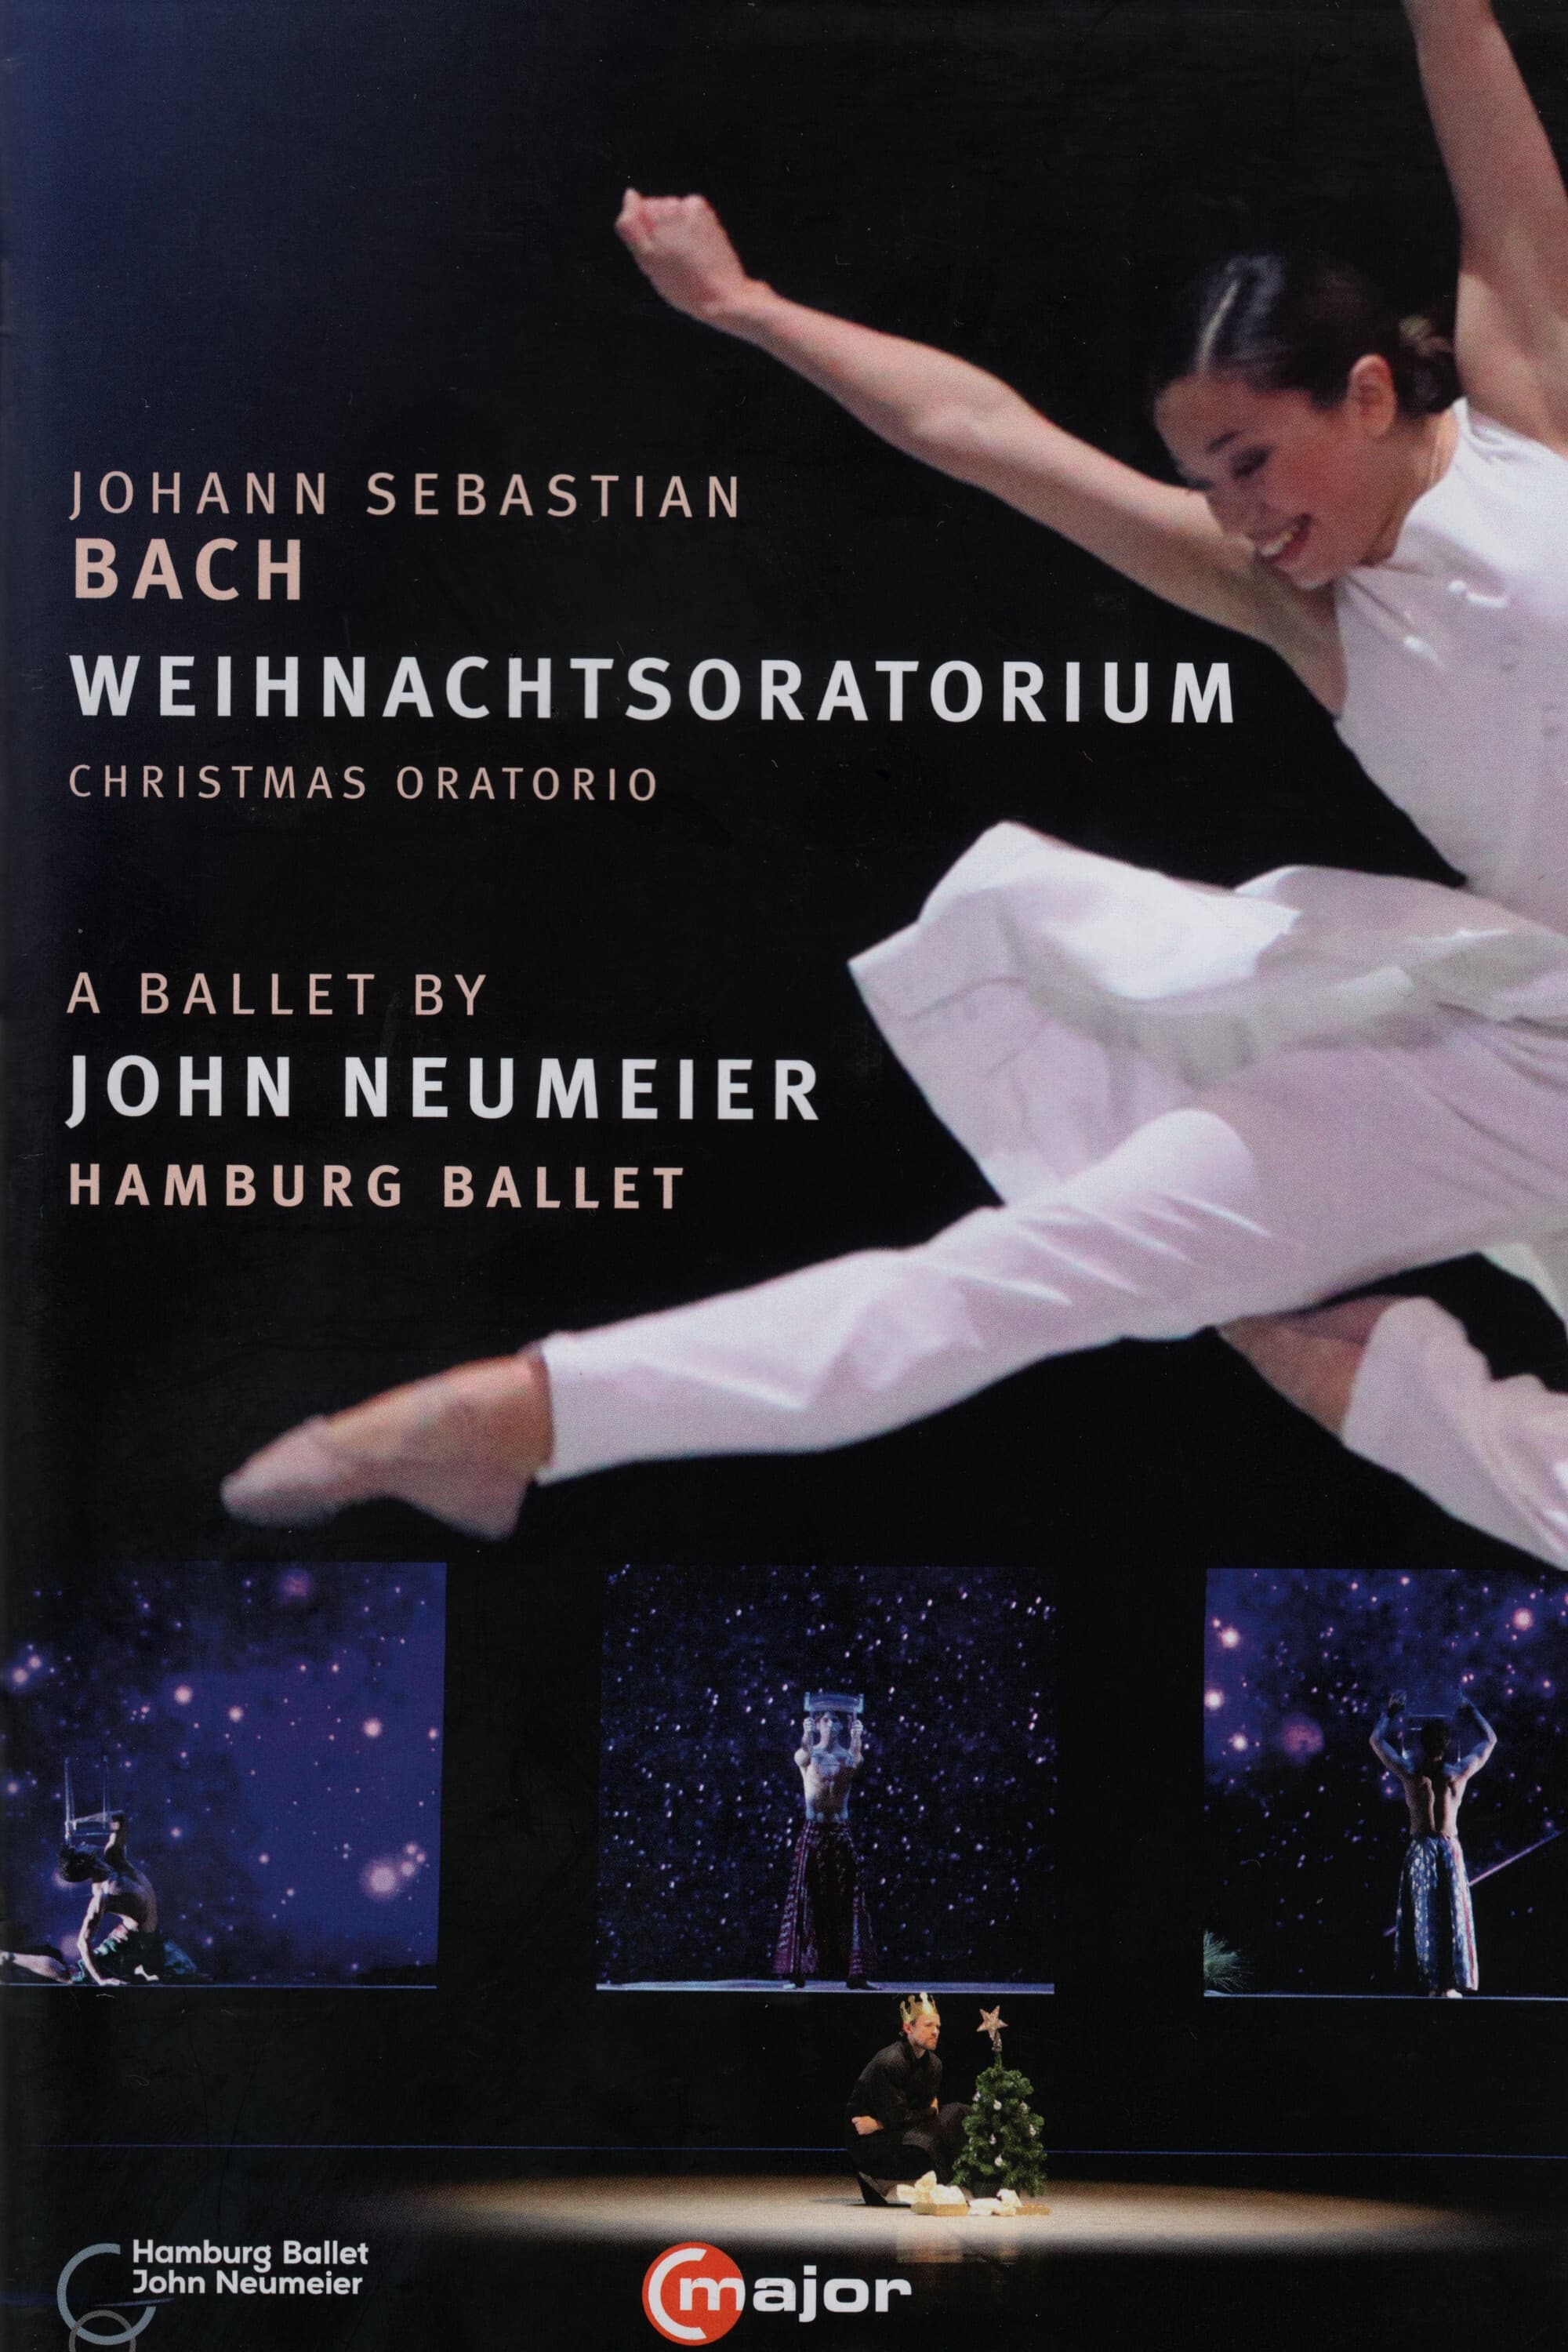 J.S. Bach - Christmas Oratorio - A Ballet by John Neumeier